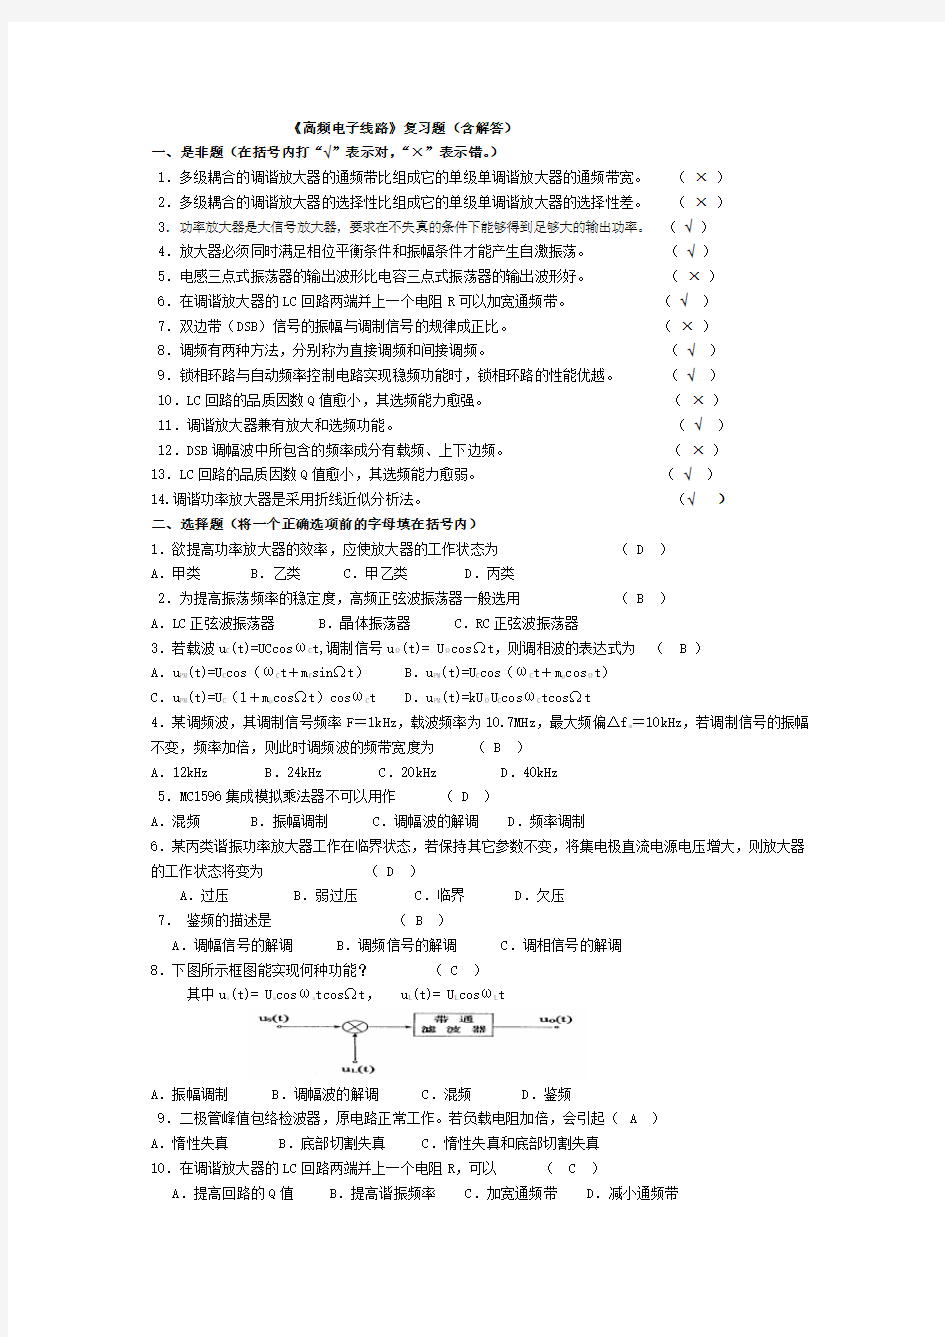 完整word版,高频电子线路习题集(含答案),推荐文档